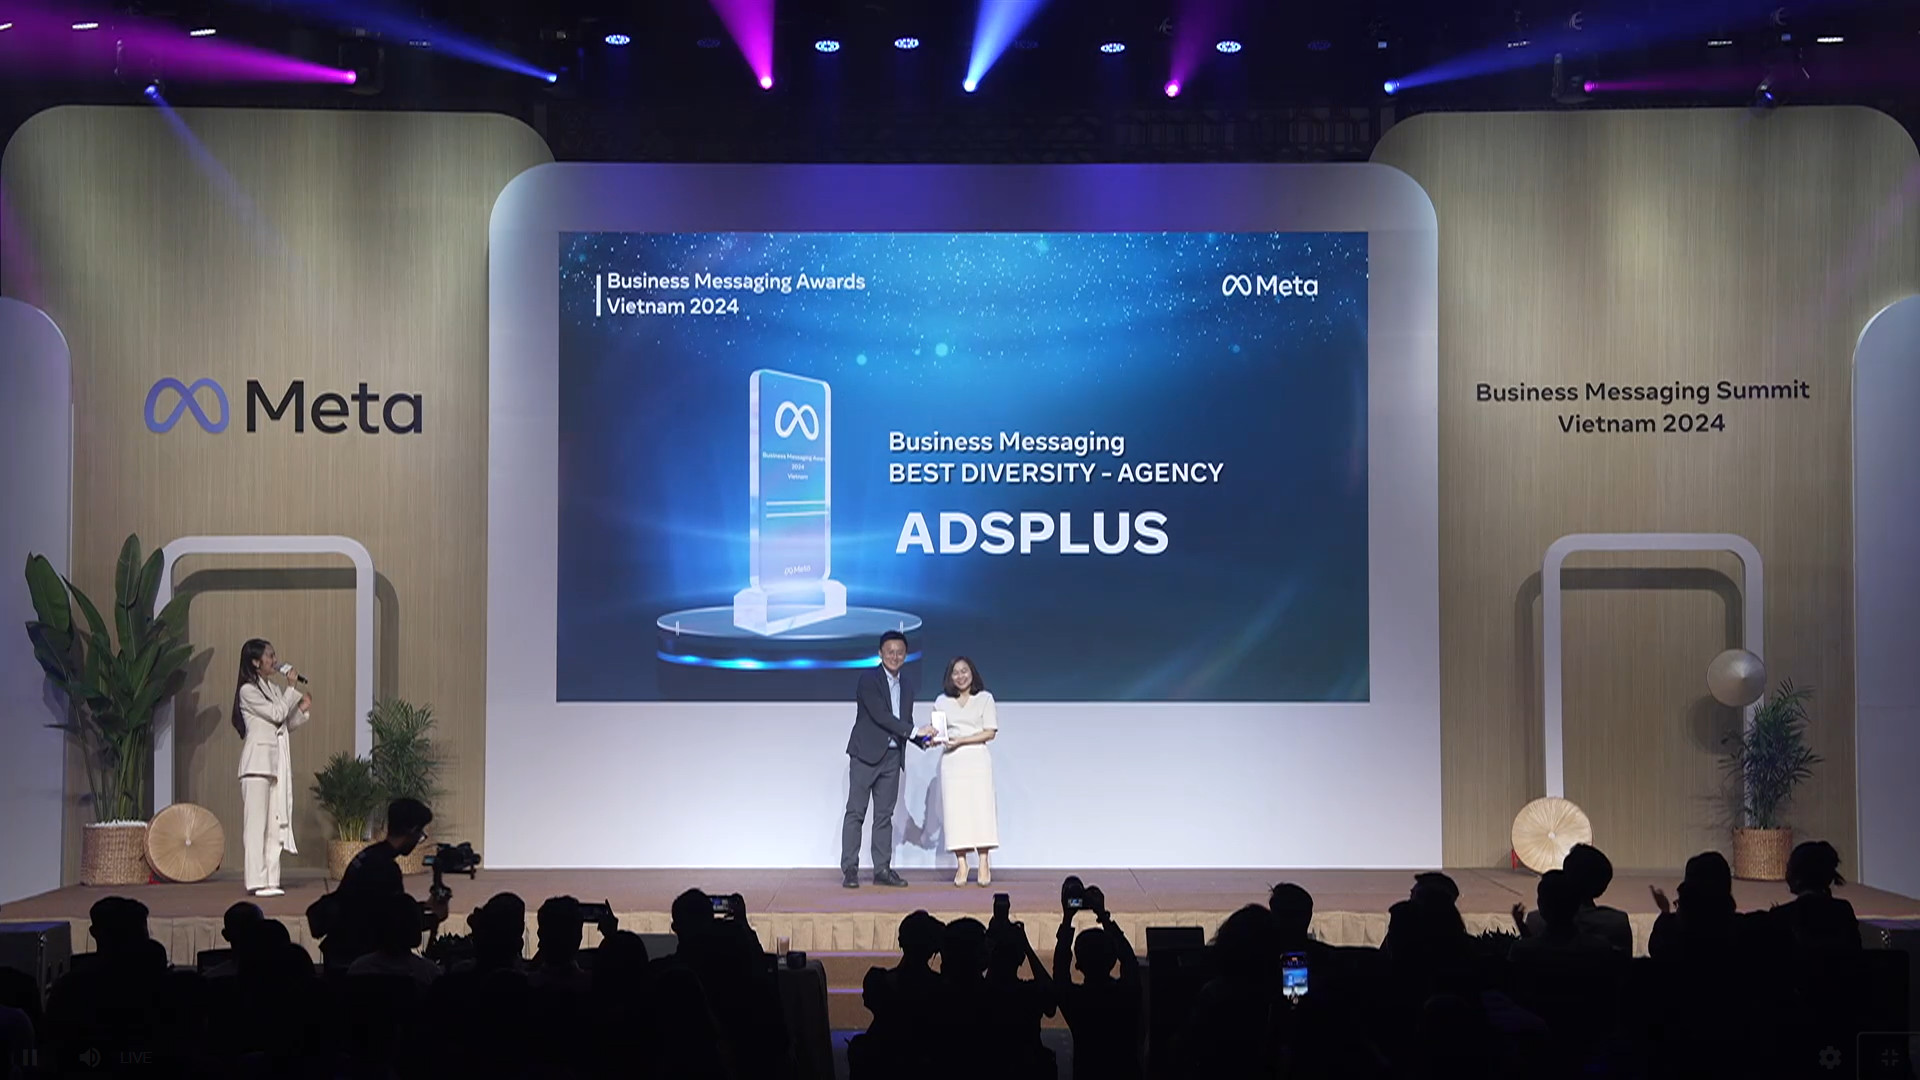 Adsplus lần nữa được Meta vinh danh tại Vietnam Business Messaging Awards 2024